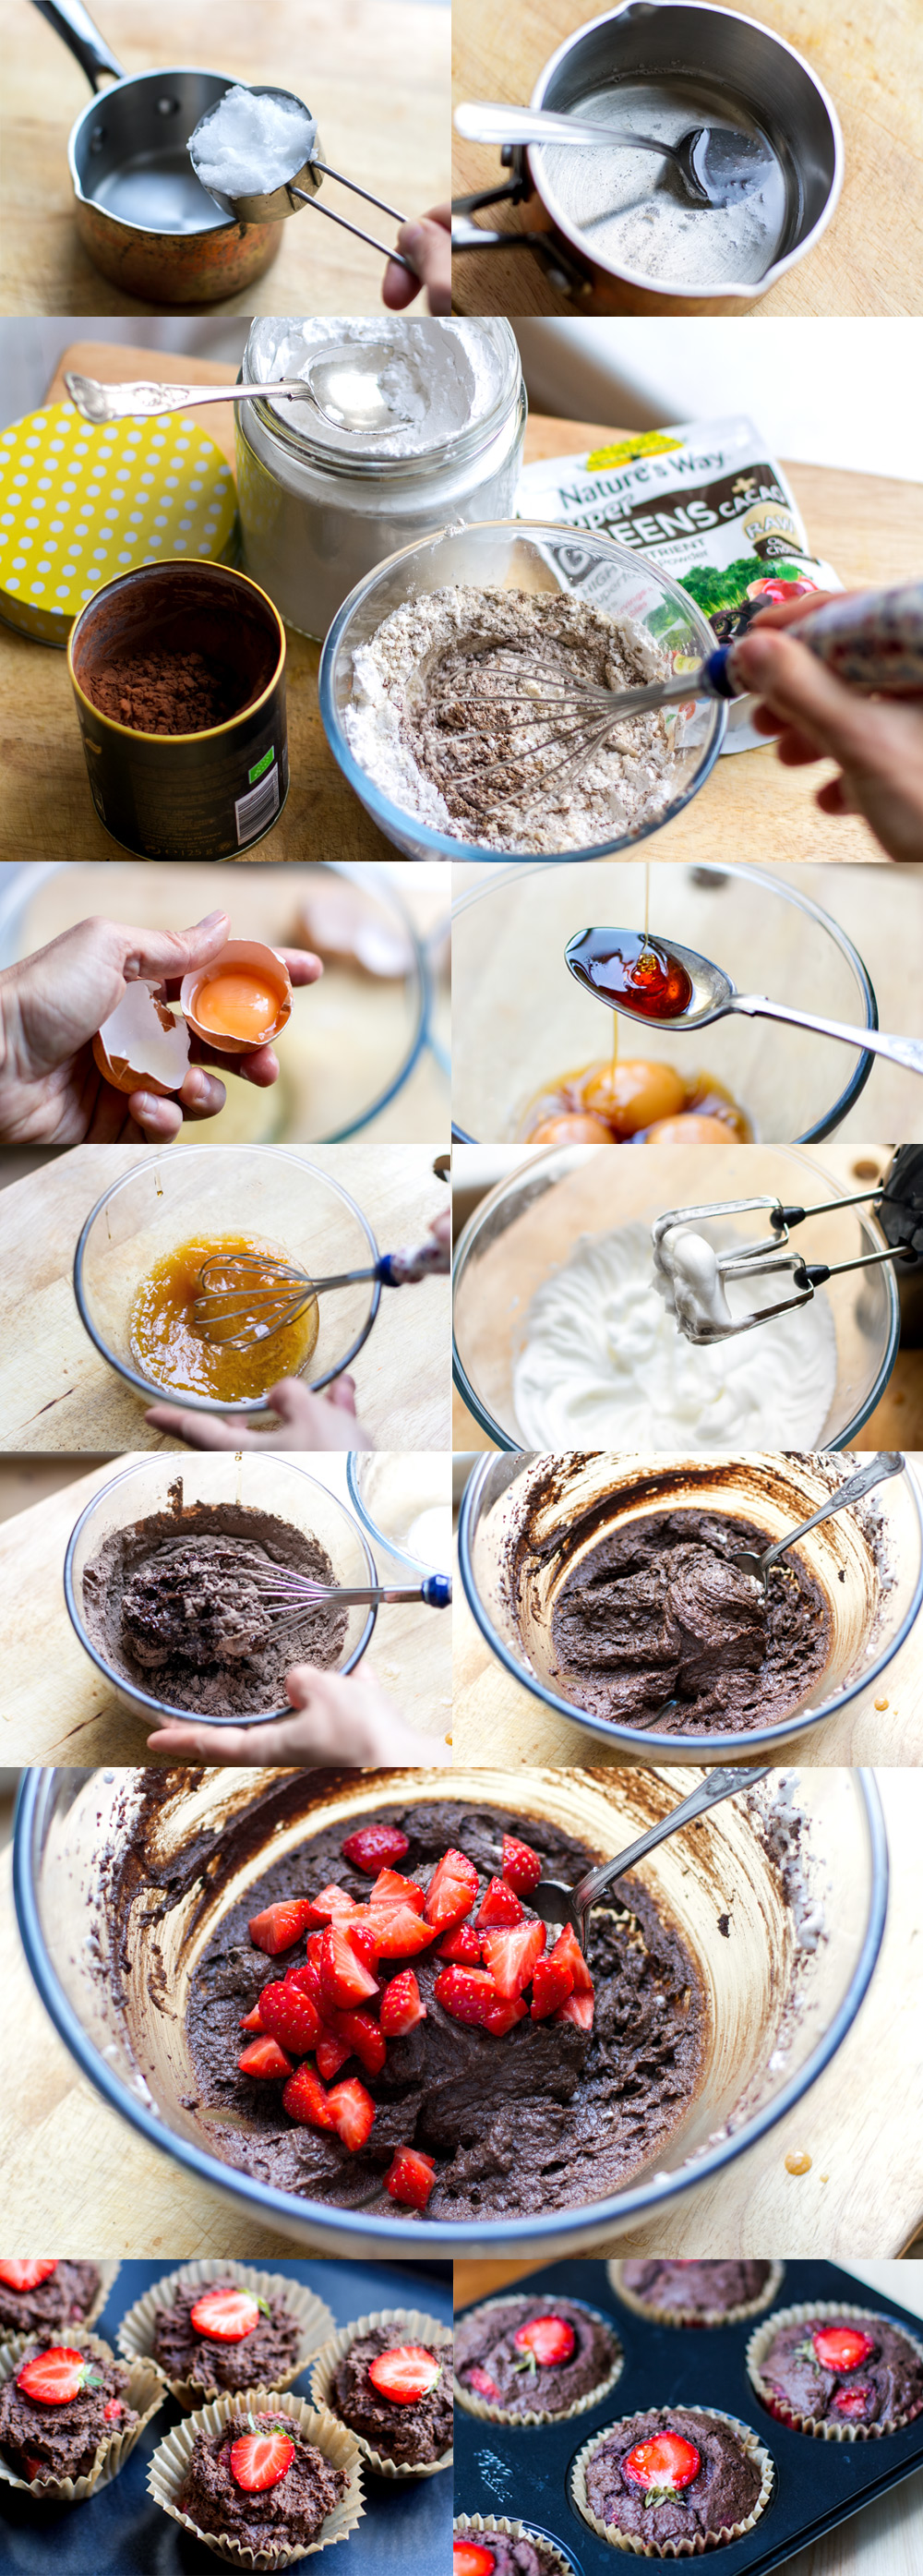 how_to_make_paleo_chocolate_muffins_